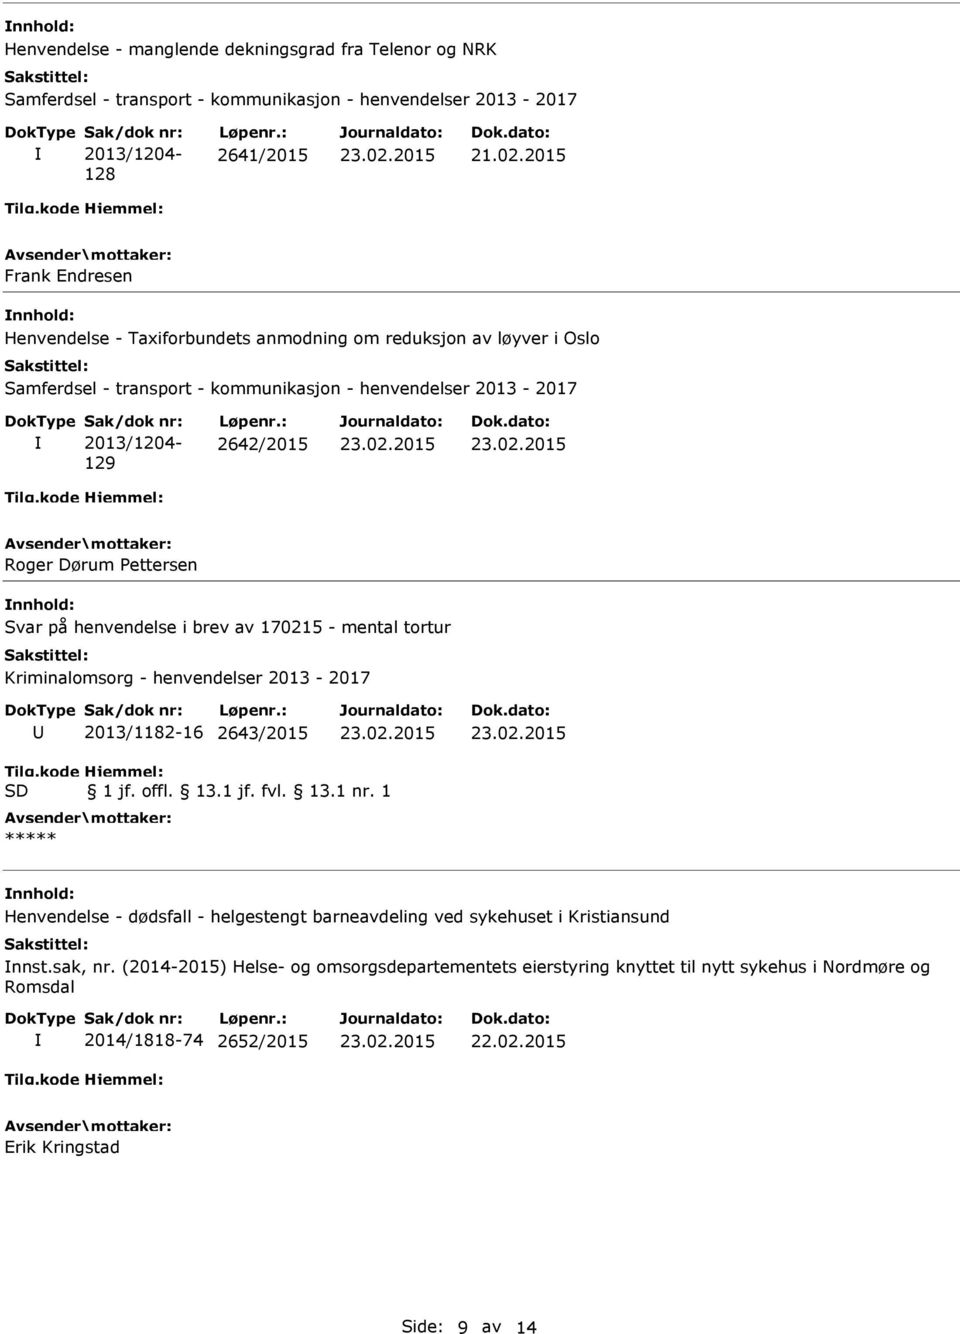 Pettersen Svar på henvendelse i brev av 170215 - mental tortur Kriminalomsorg - henvendelser 2013-2017 2013/1182-16 2643/2015 Tilg.kode SD Hjemmel: 1 jf. offl. 13.1 jf. fvl. 13.1 nr.